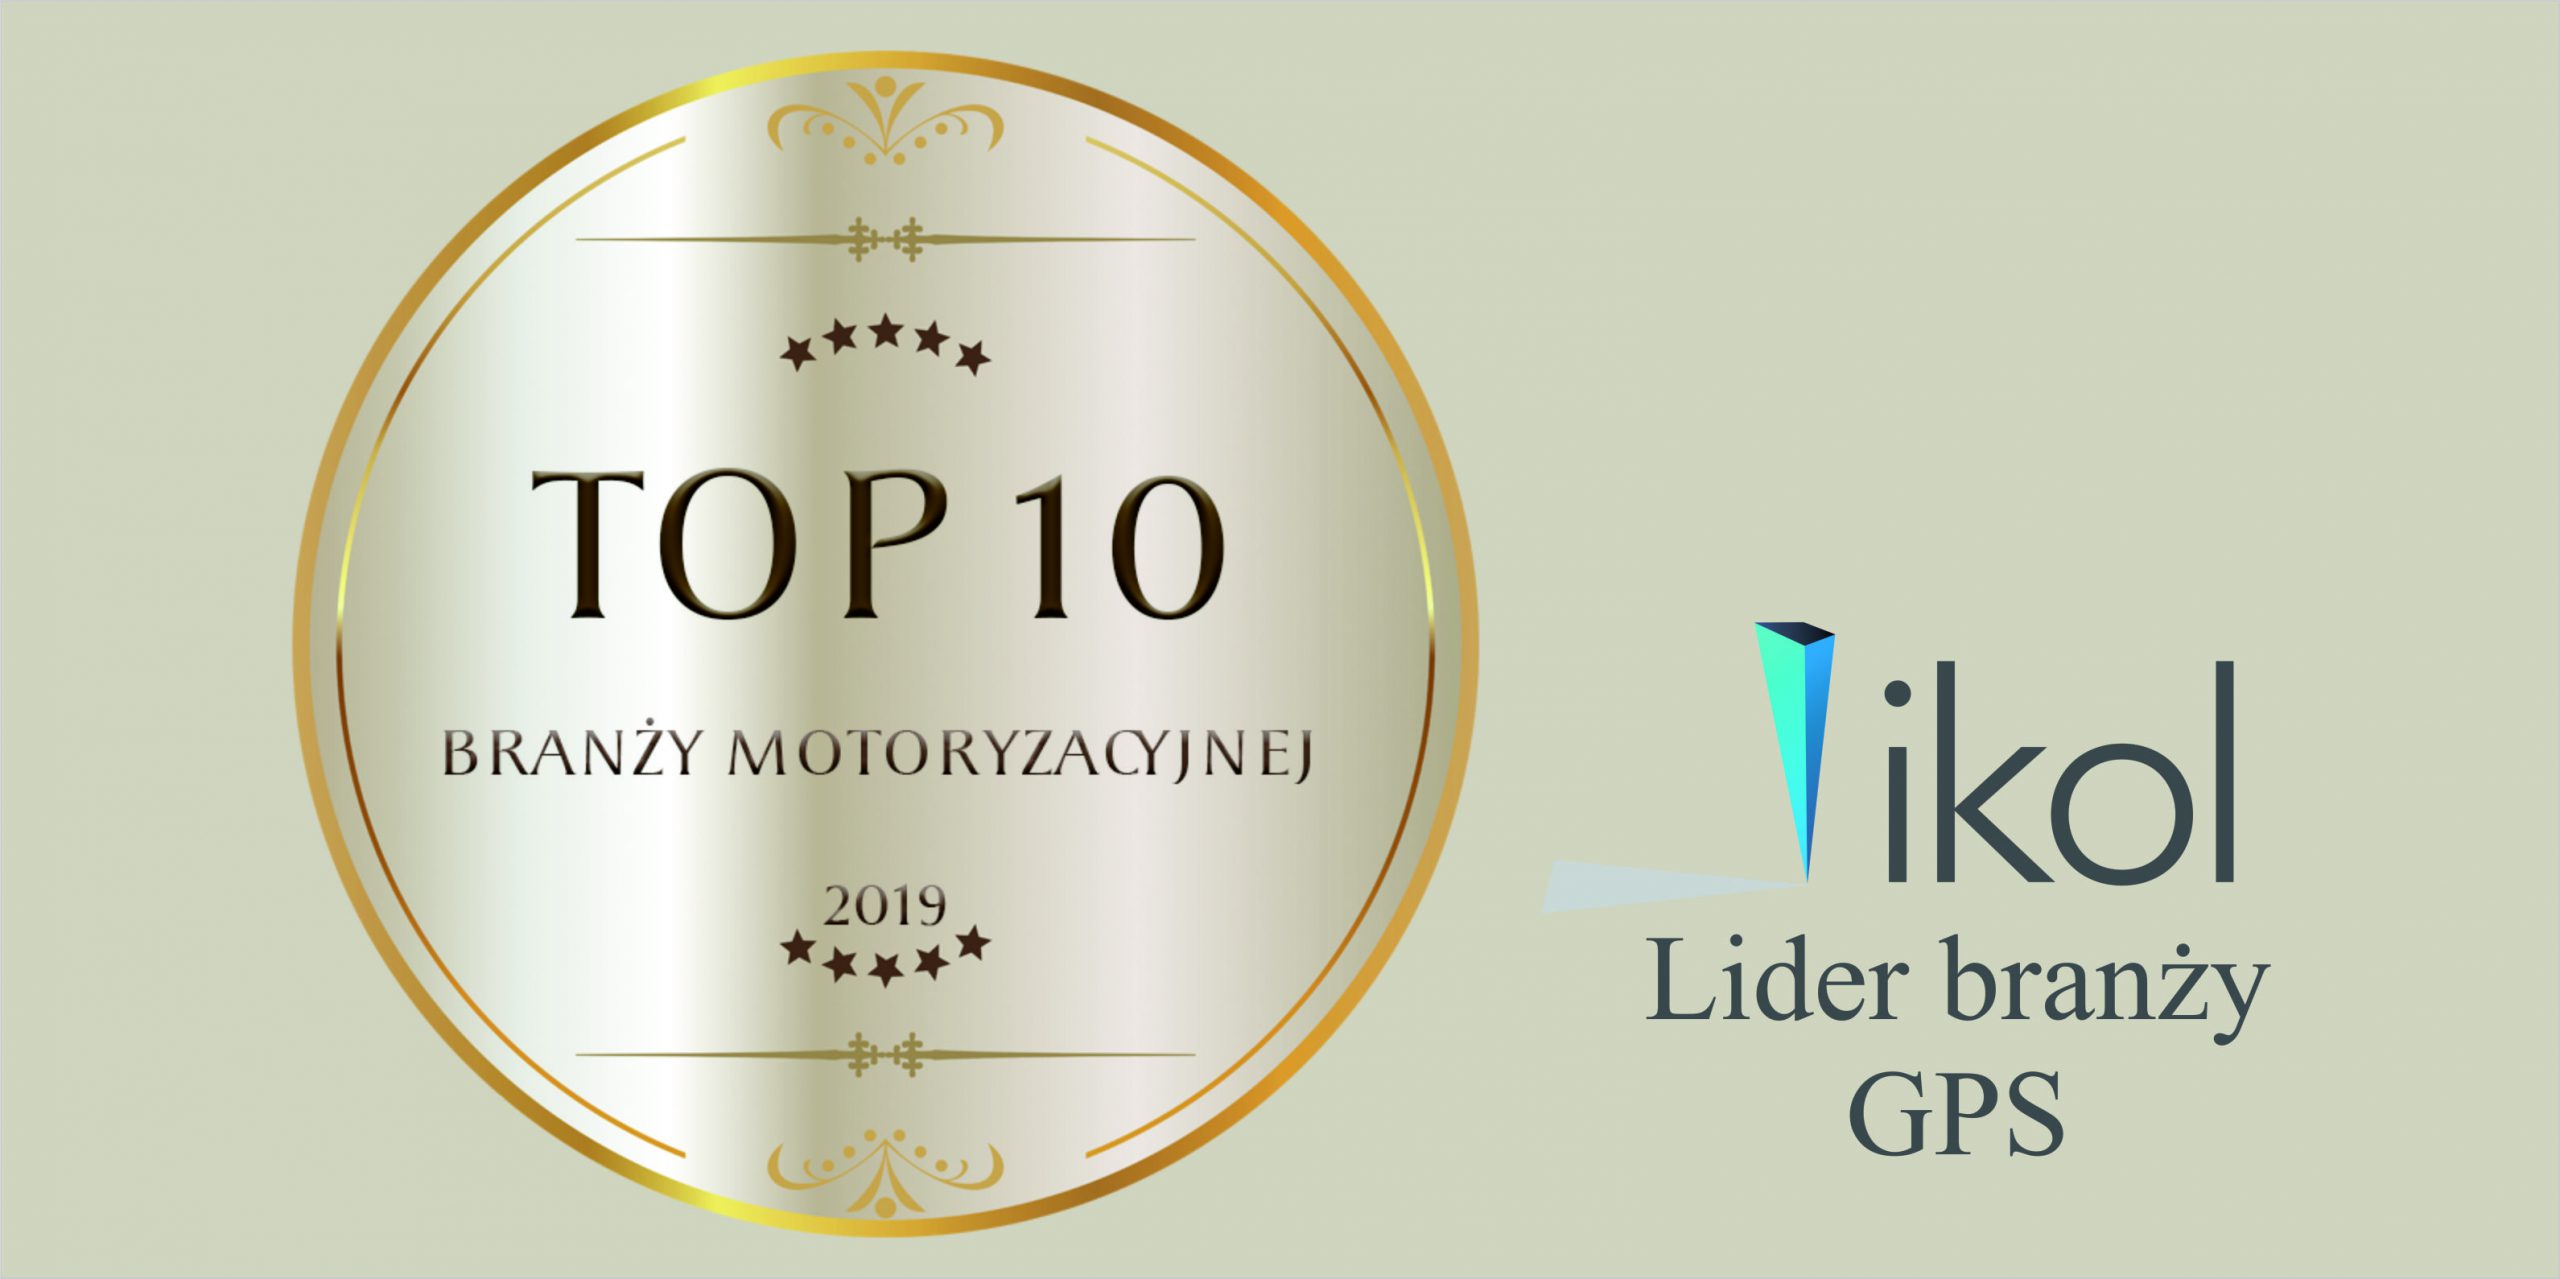 TOP 10 Branży Motoryzacyjnej